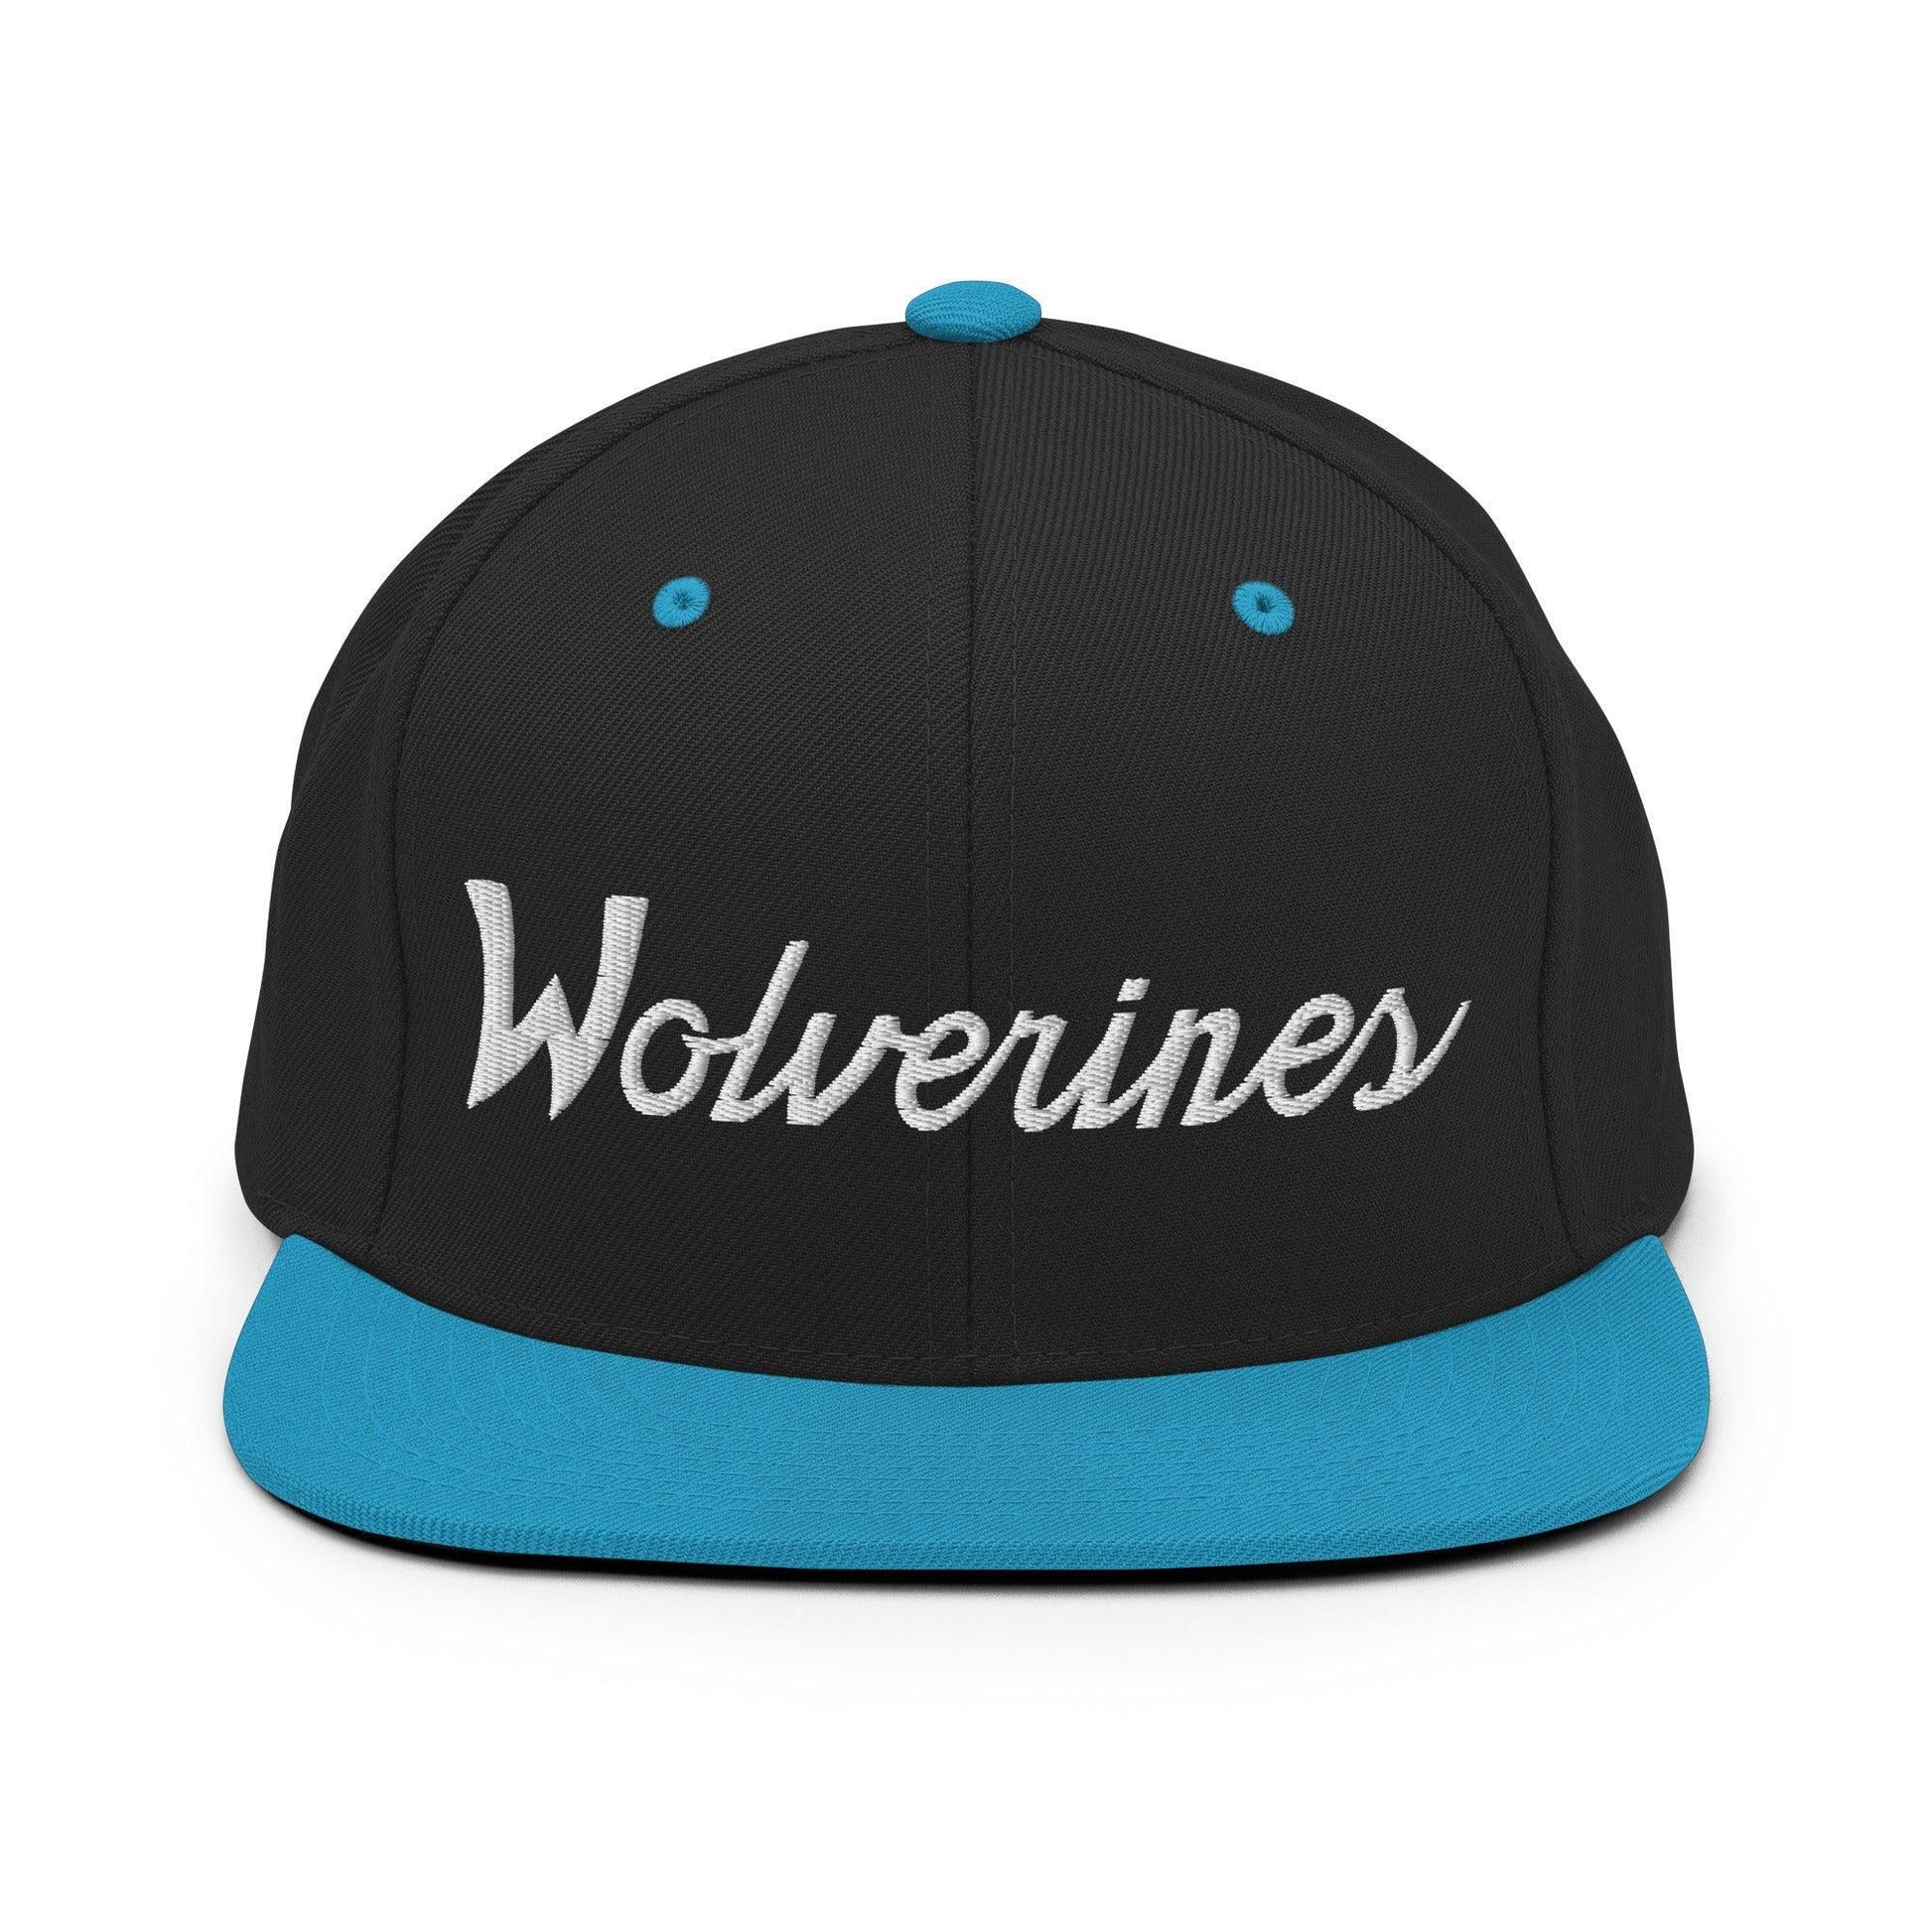 Wolverines School Mascot Script Snapback Hat Black/ Teal